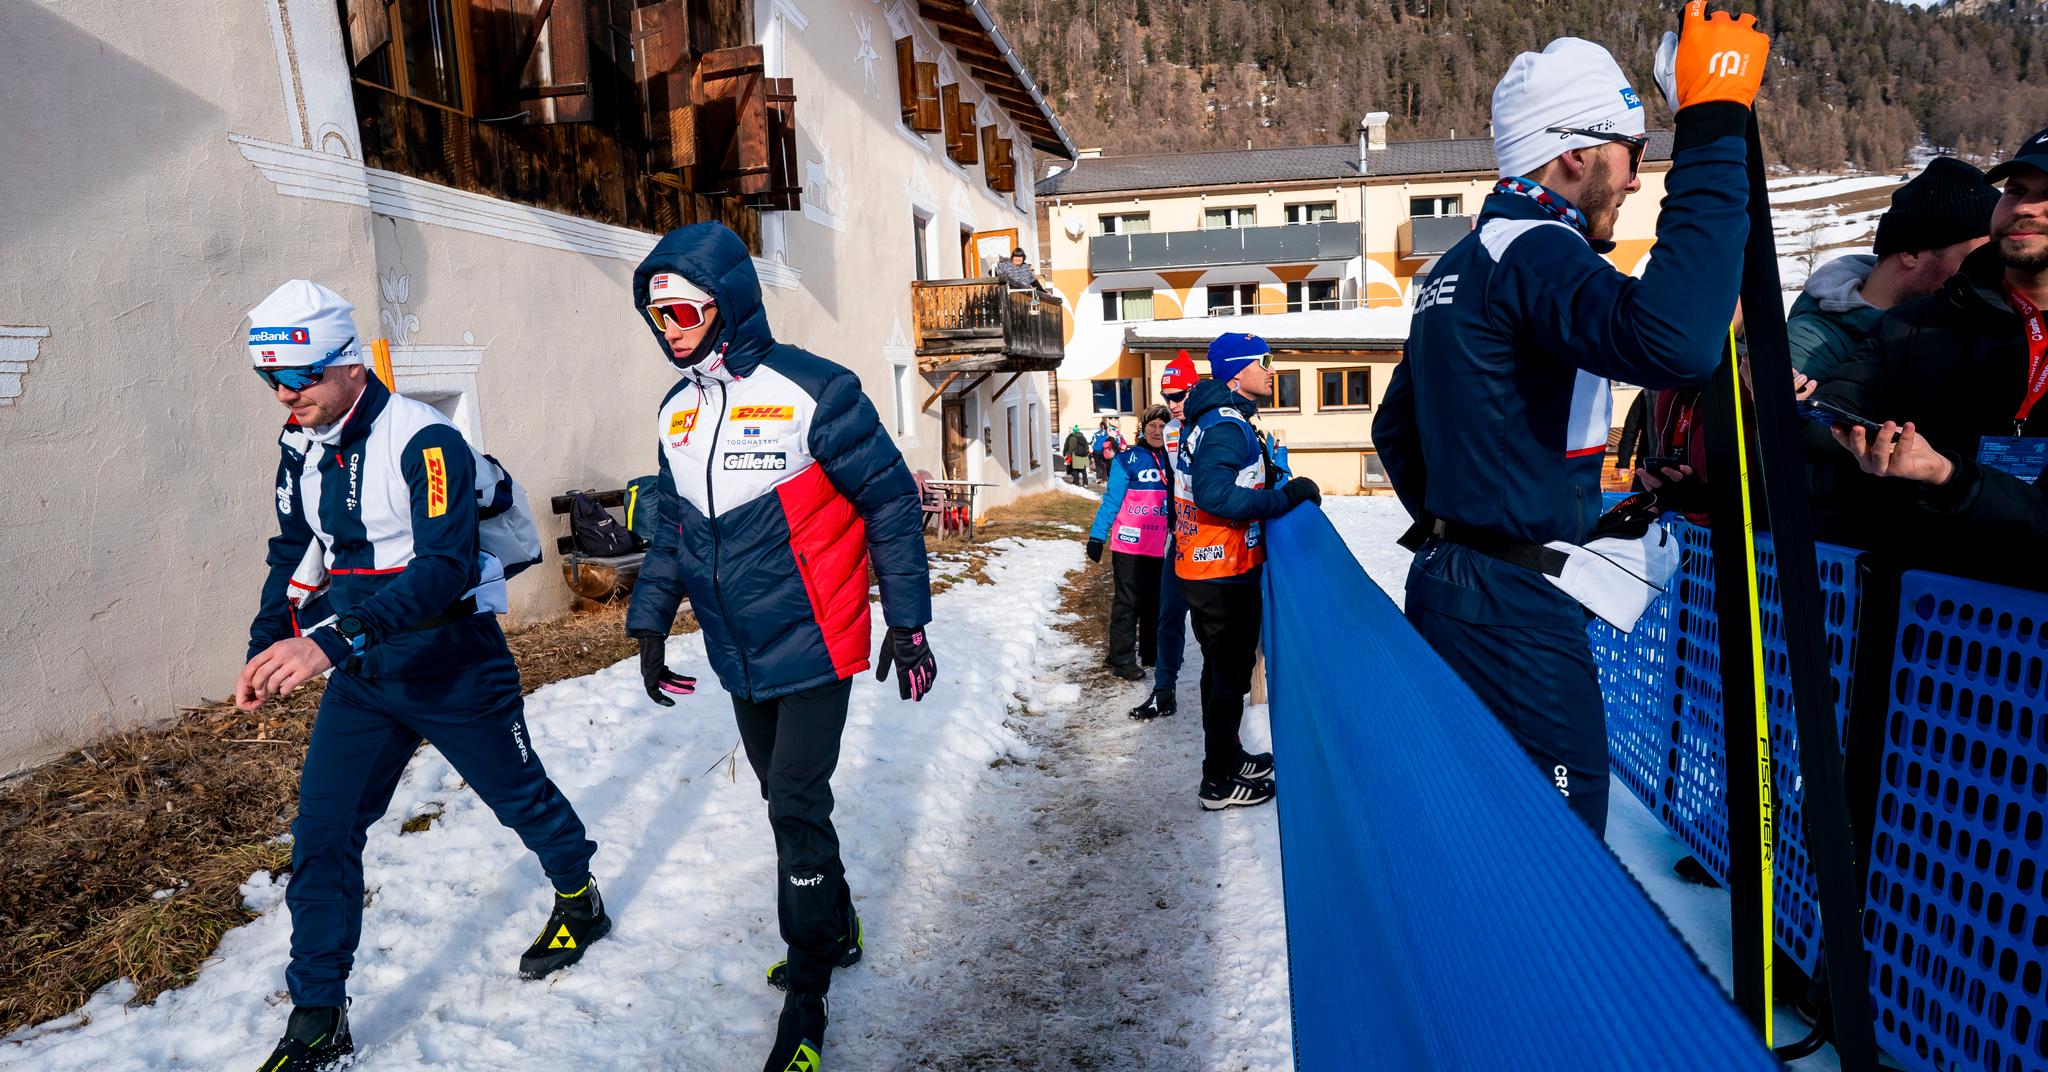 Johannes Høsflot Klæbo gjør seg klar for finaleheatene i Val Müstair. Gjennom hele dagen var skistjernen overlegen.